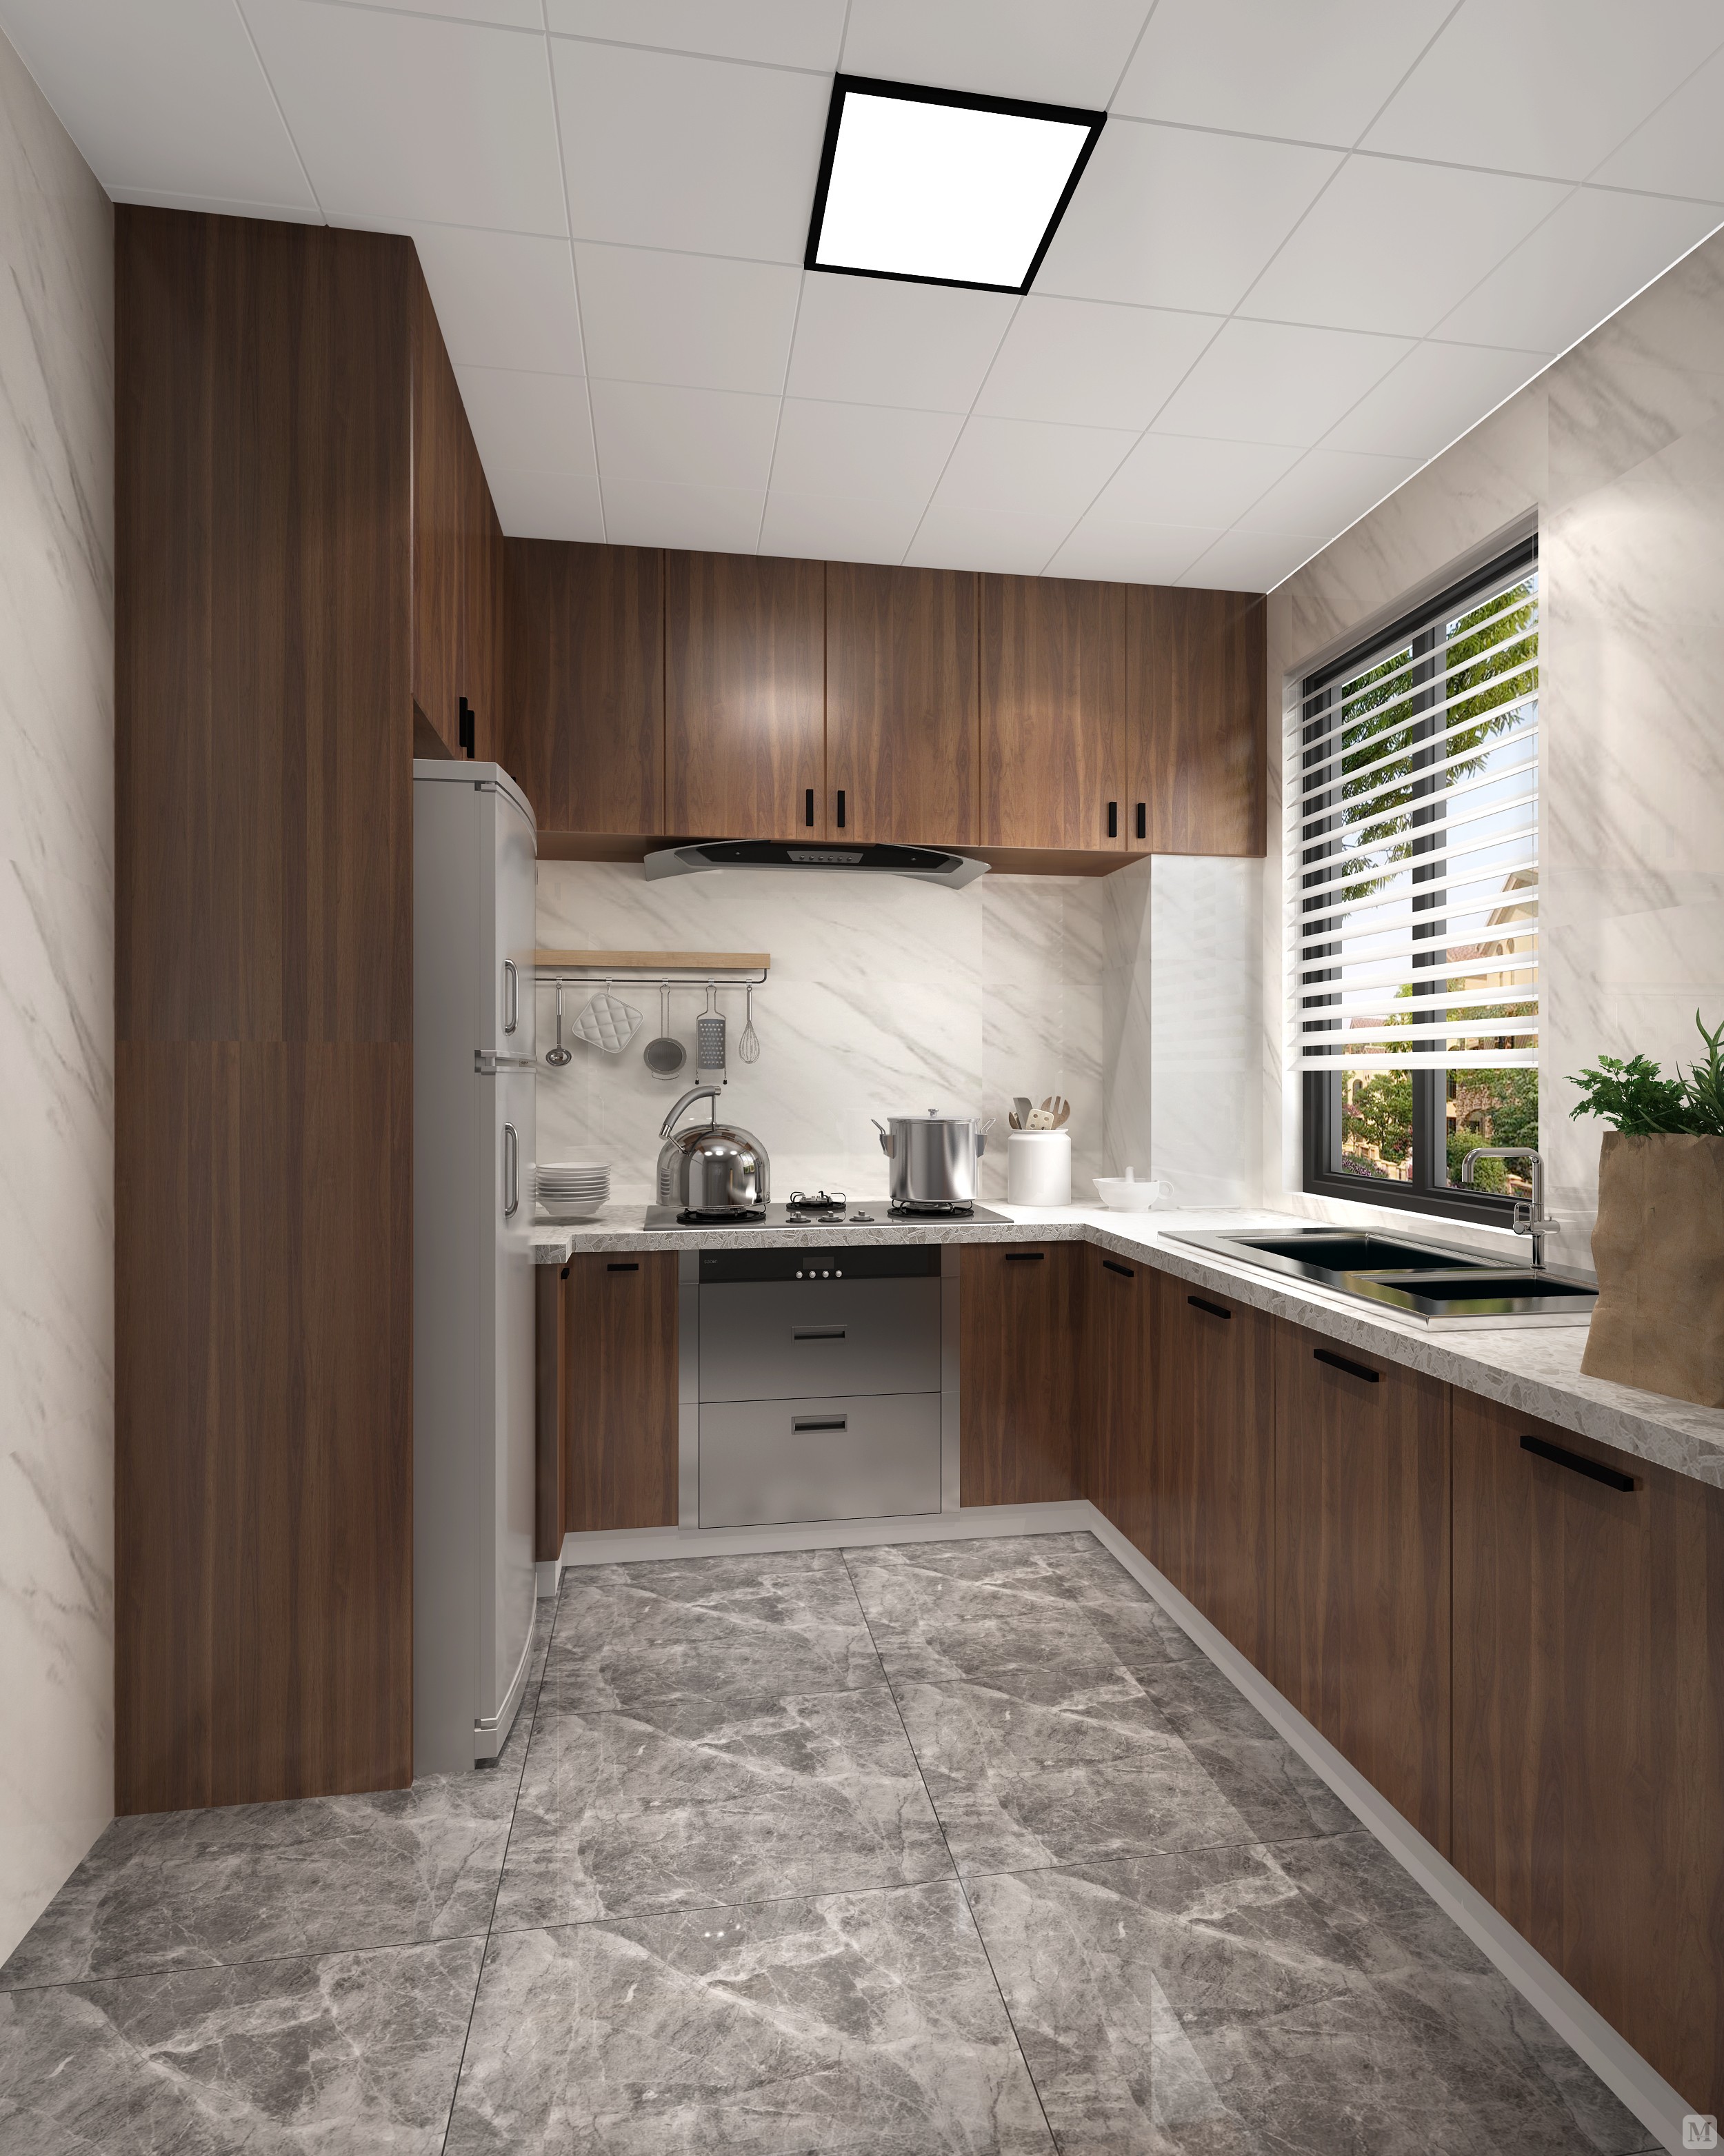 厨房采用了木色的整体橱柜,地面上的灰色瓷砖纹理才体现质感的同时也